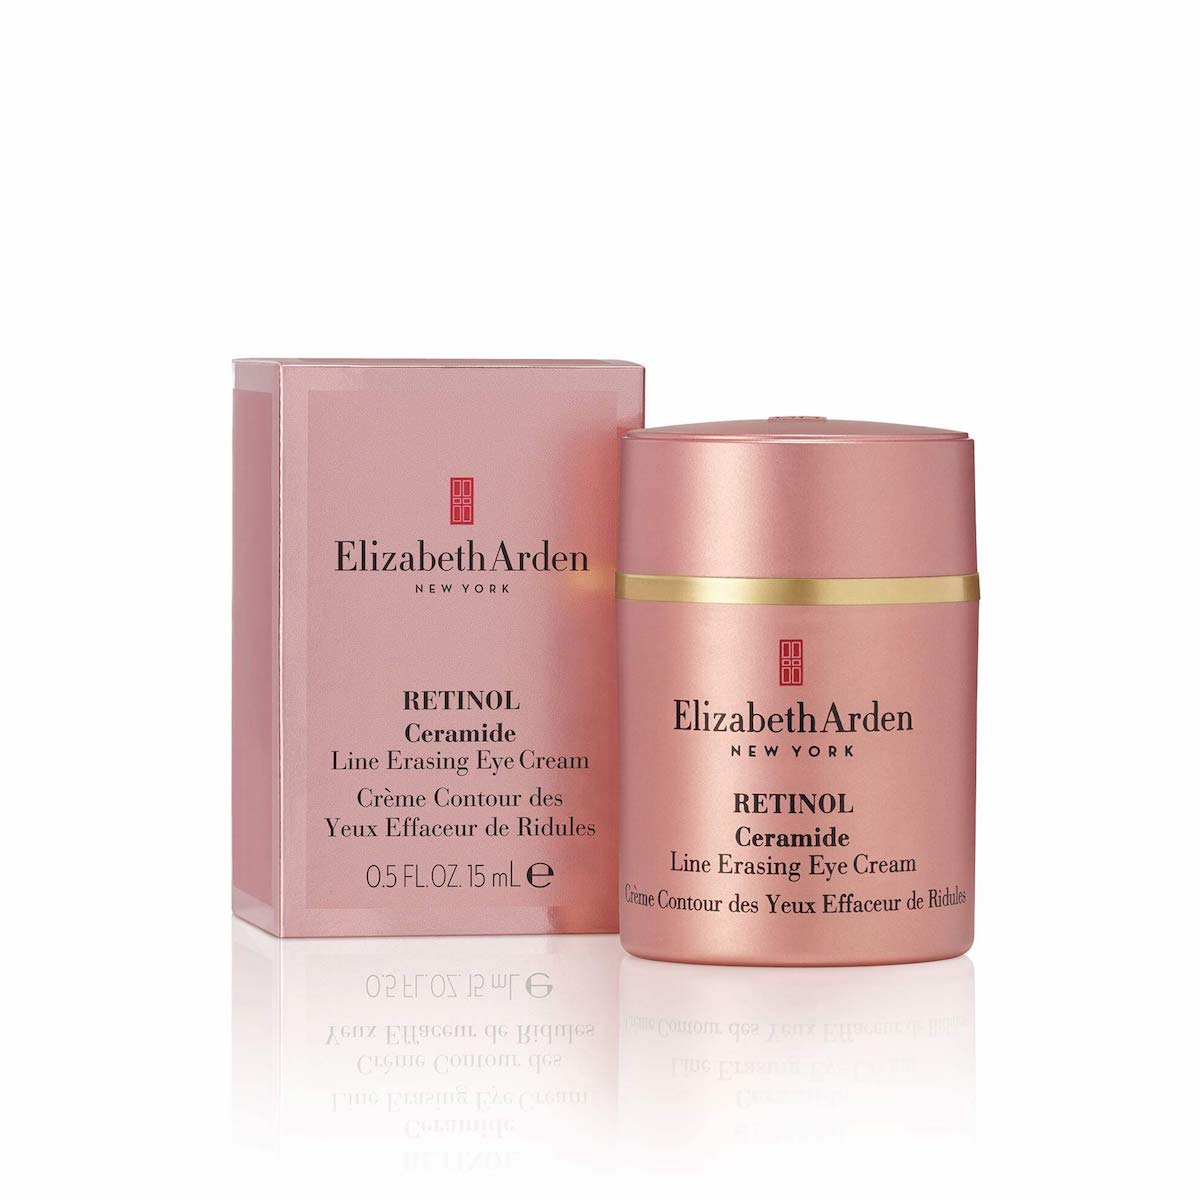 Best Retinol Eye Creams: Elizabeth Arden Retinol Ceramide Line Erasing Eye Cream